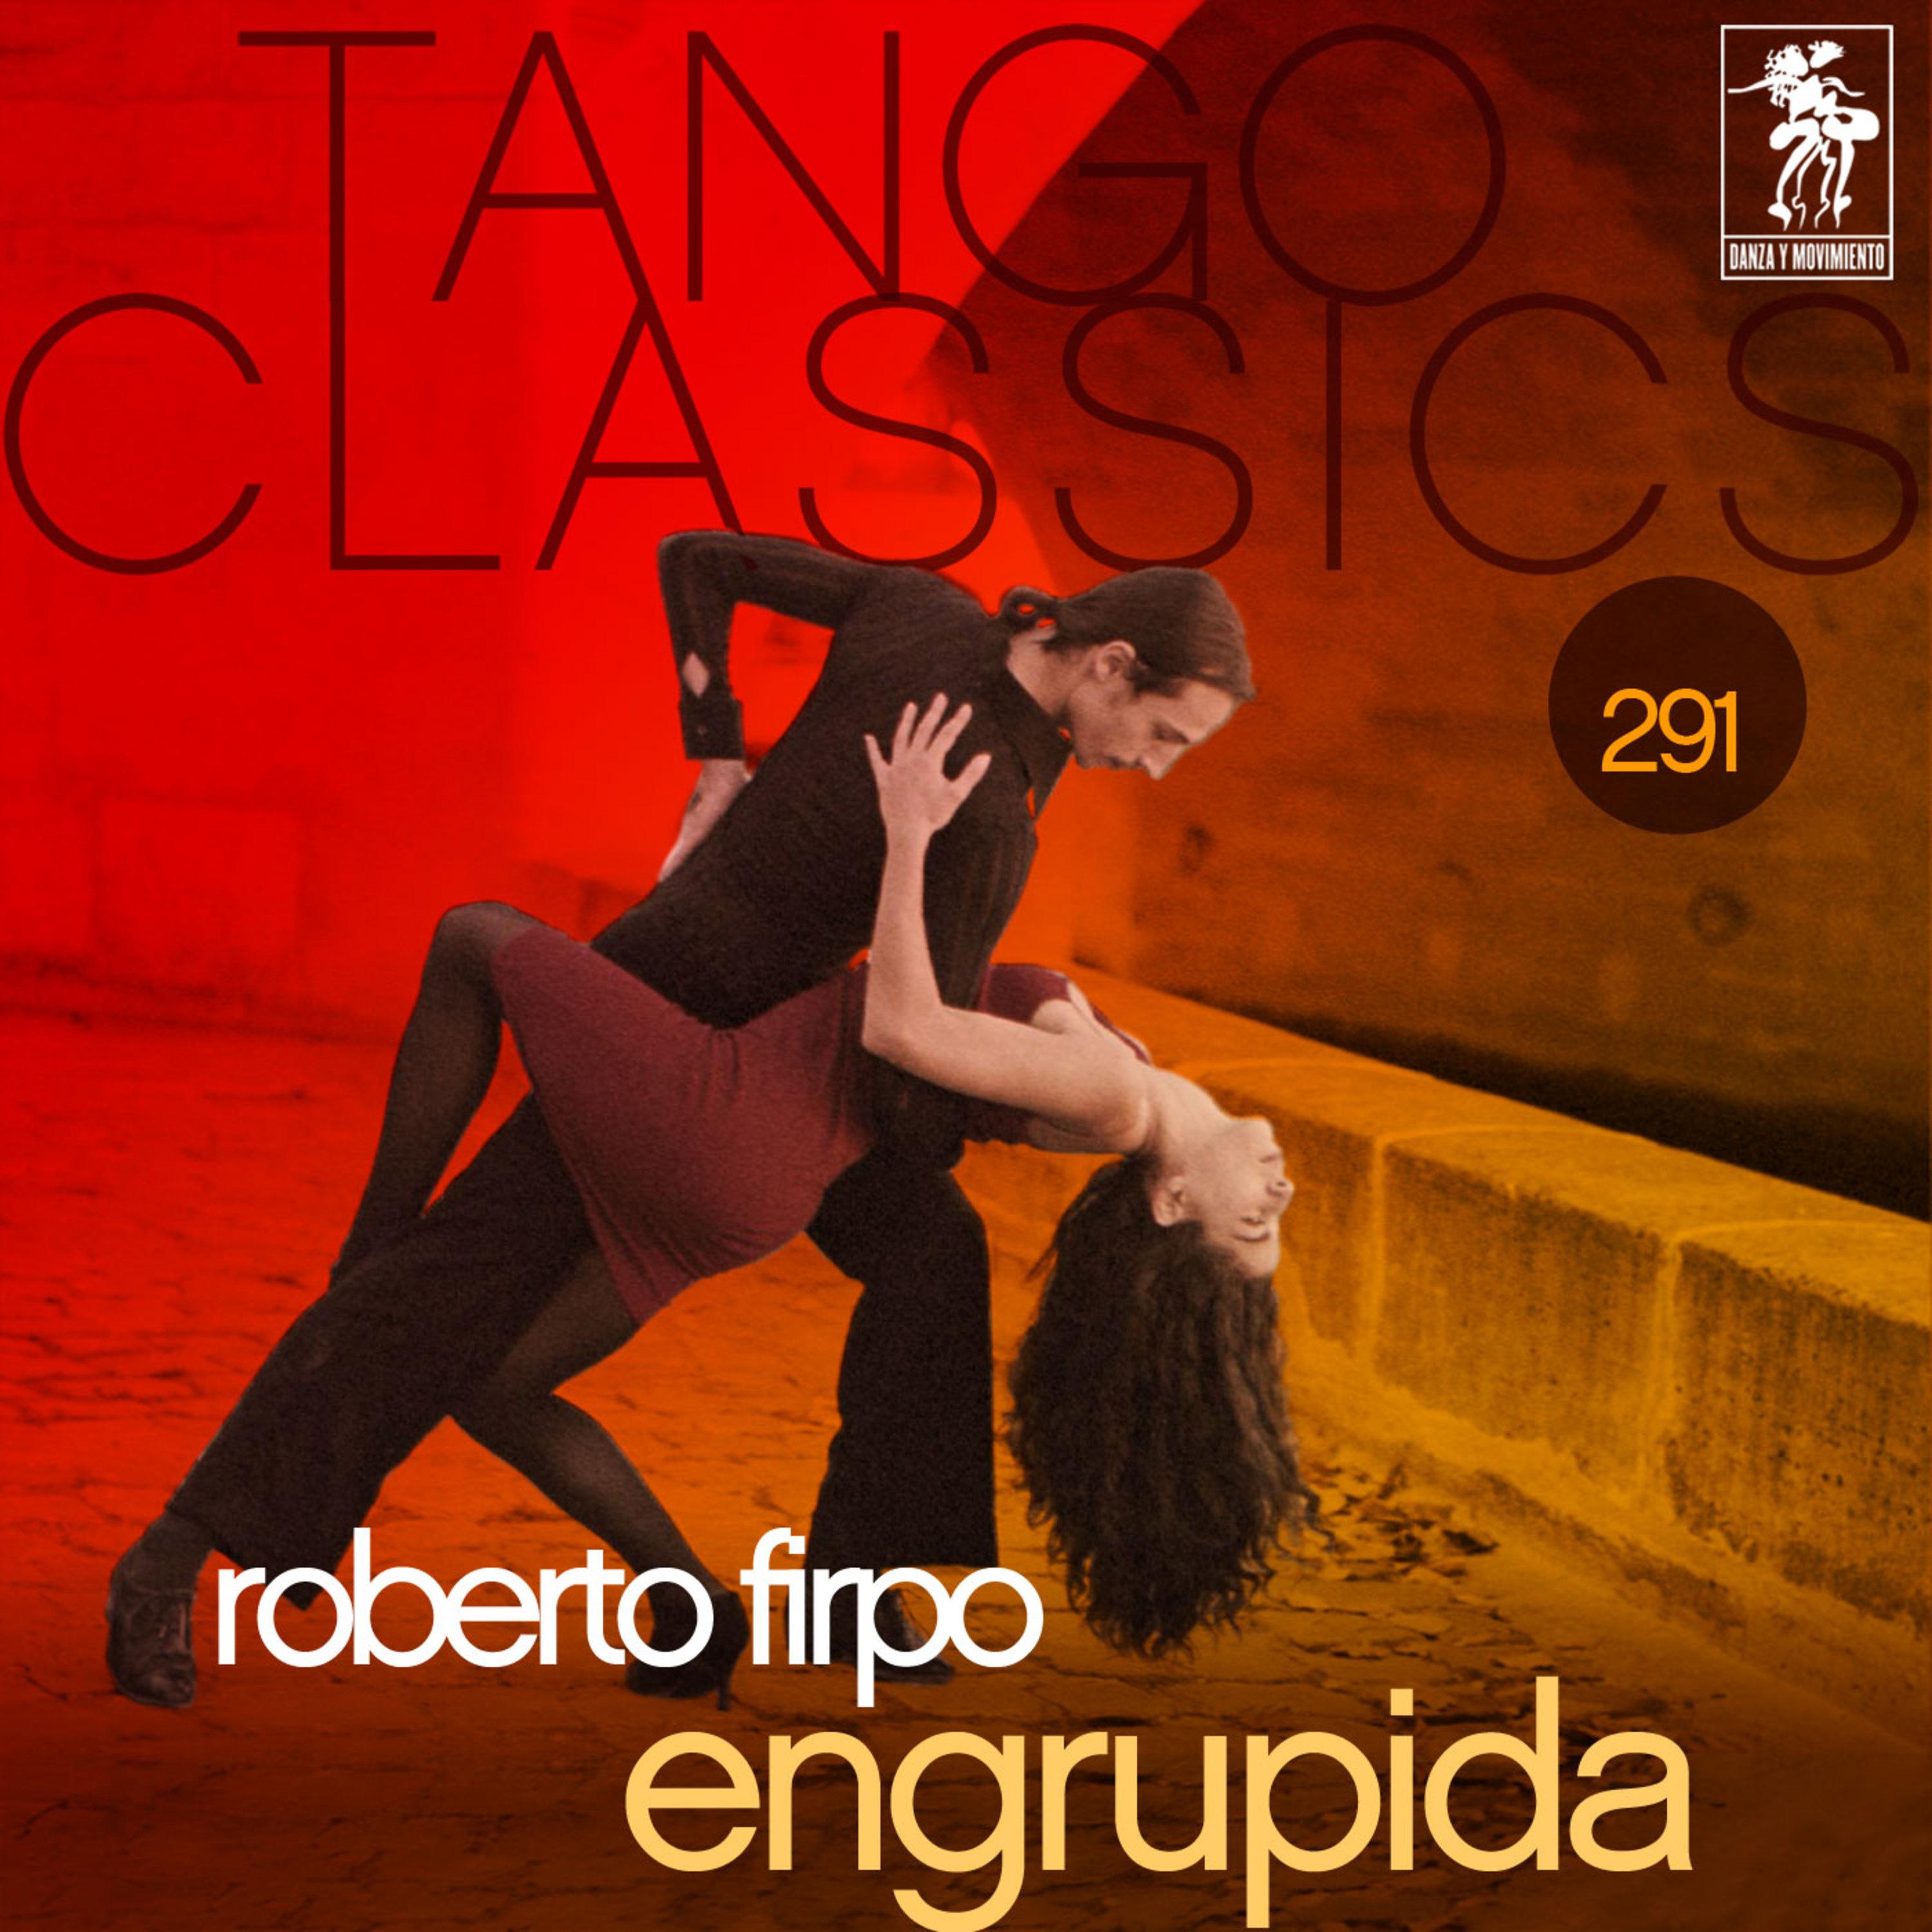 Tango Classics 291: Engrupida